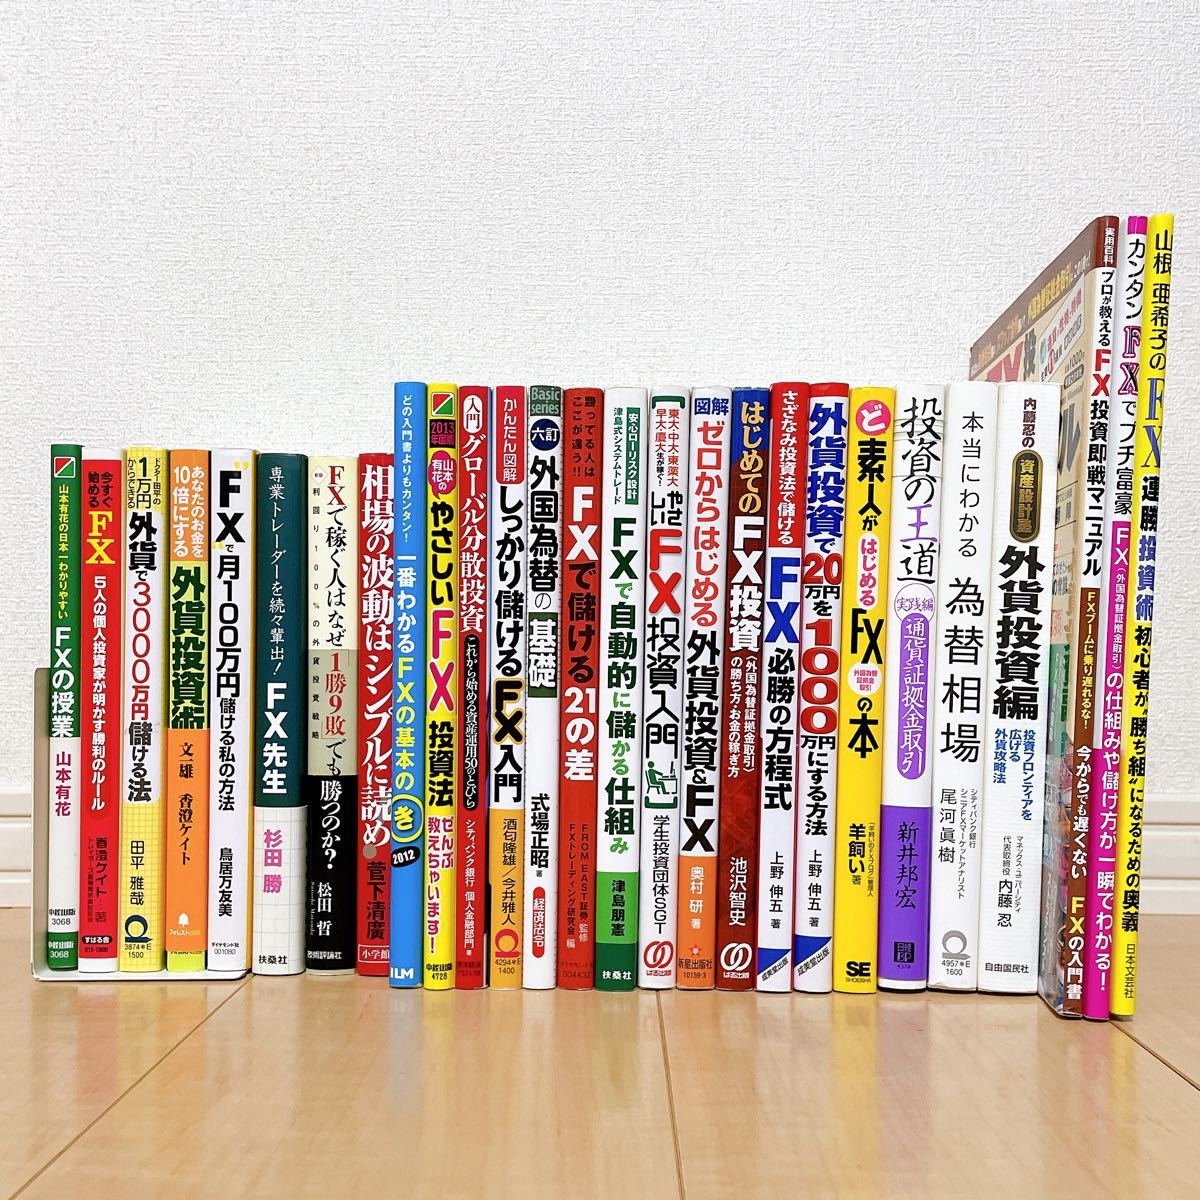 とっておきし福袋 ネット副業関連書籍30冊セットまとめ売り - 本 - www.petromindo.com